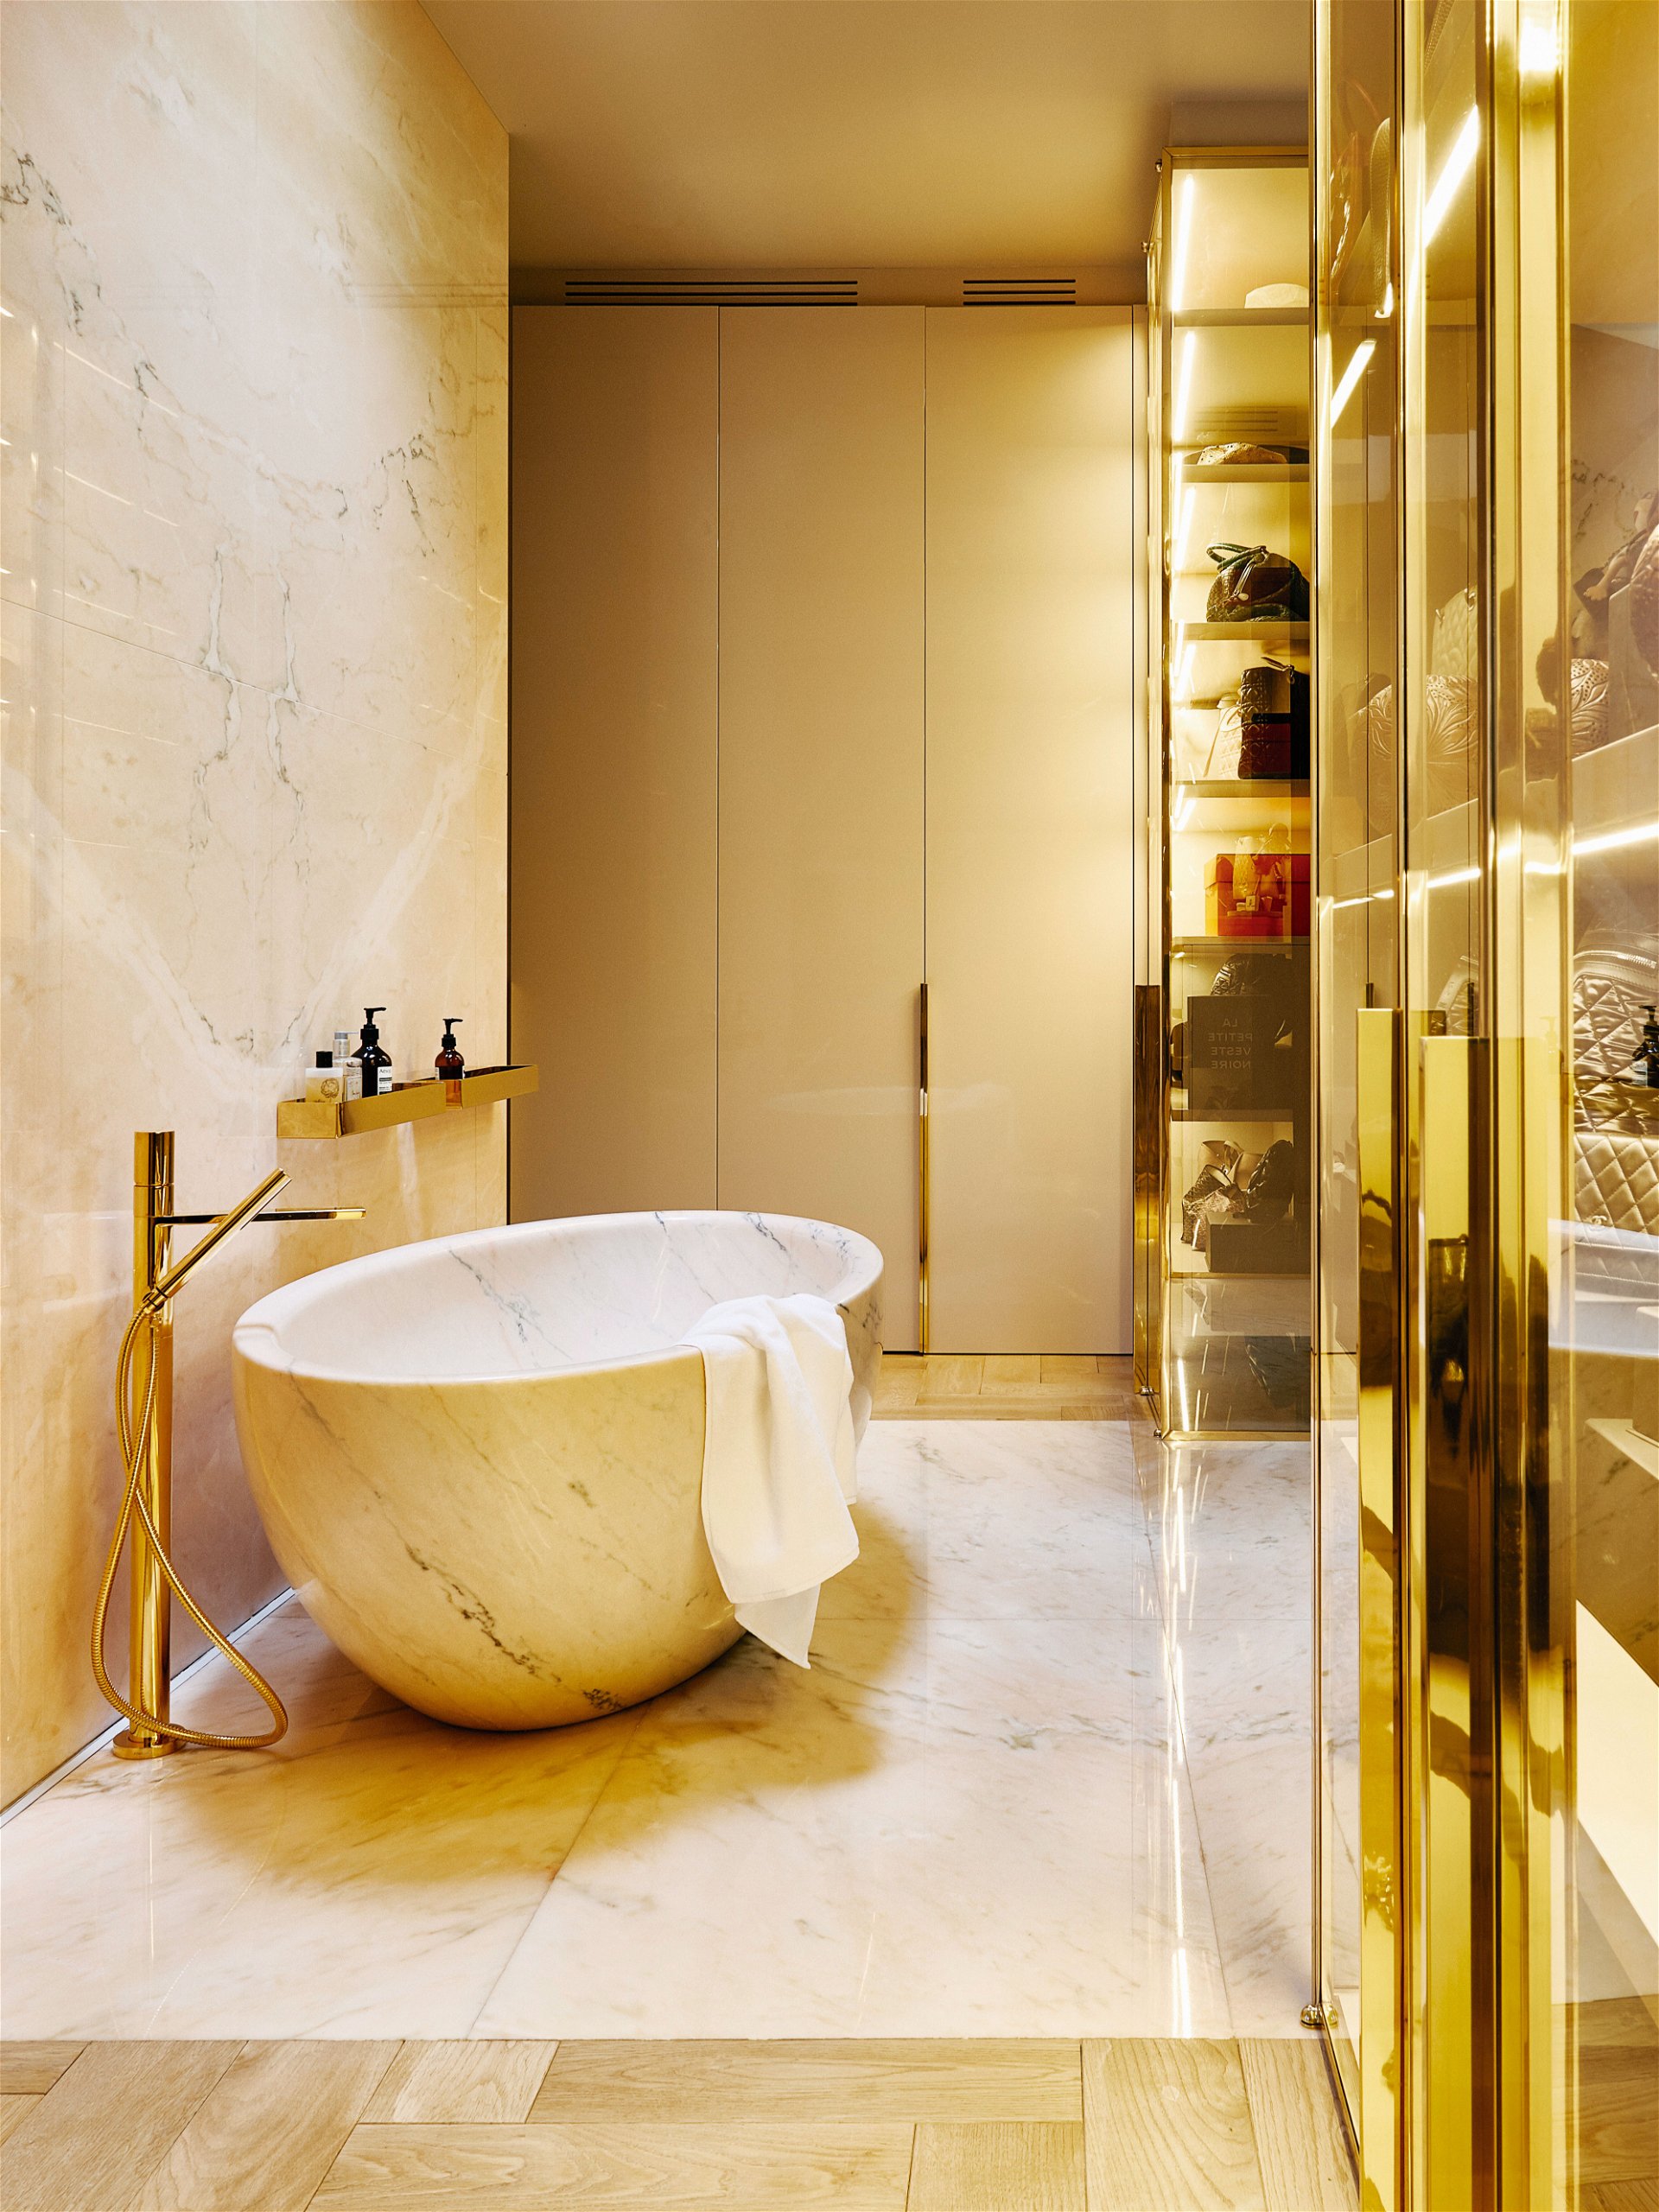 Wellness-Oase: Die speziell entworfene Badewanne besteht aus einem ausgehöhlten Block aus rosafarbenem portugiesischem Marmor. Die Armaturen der Dusche und der Badewanne sind von Fantini. fantini.it